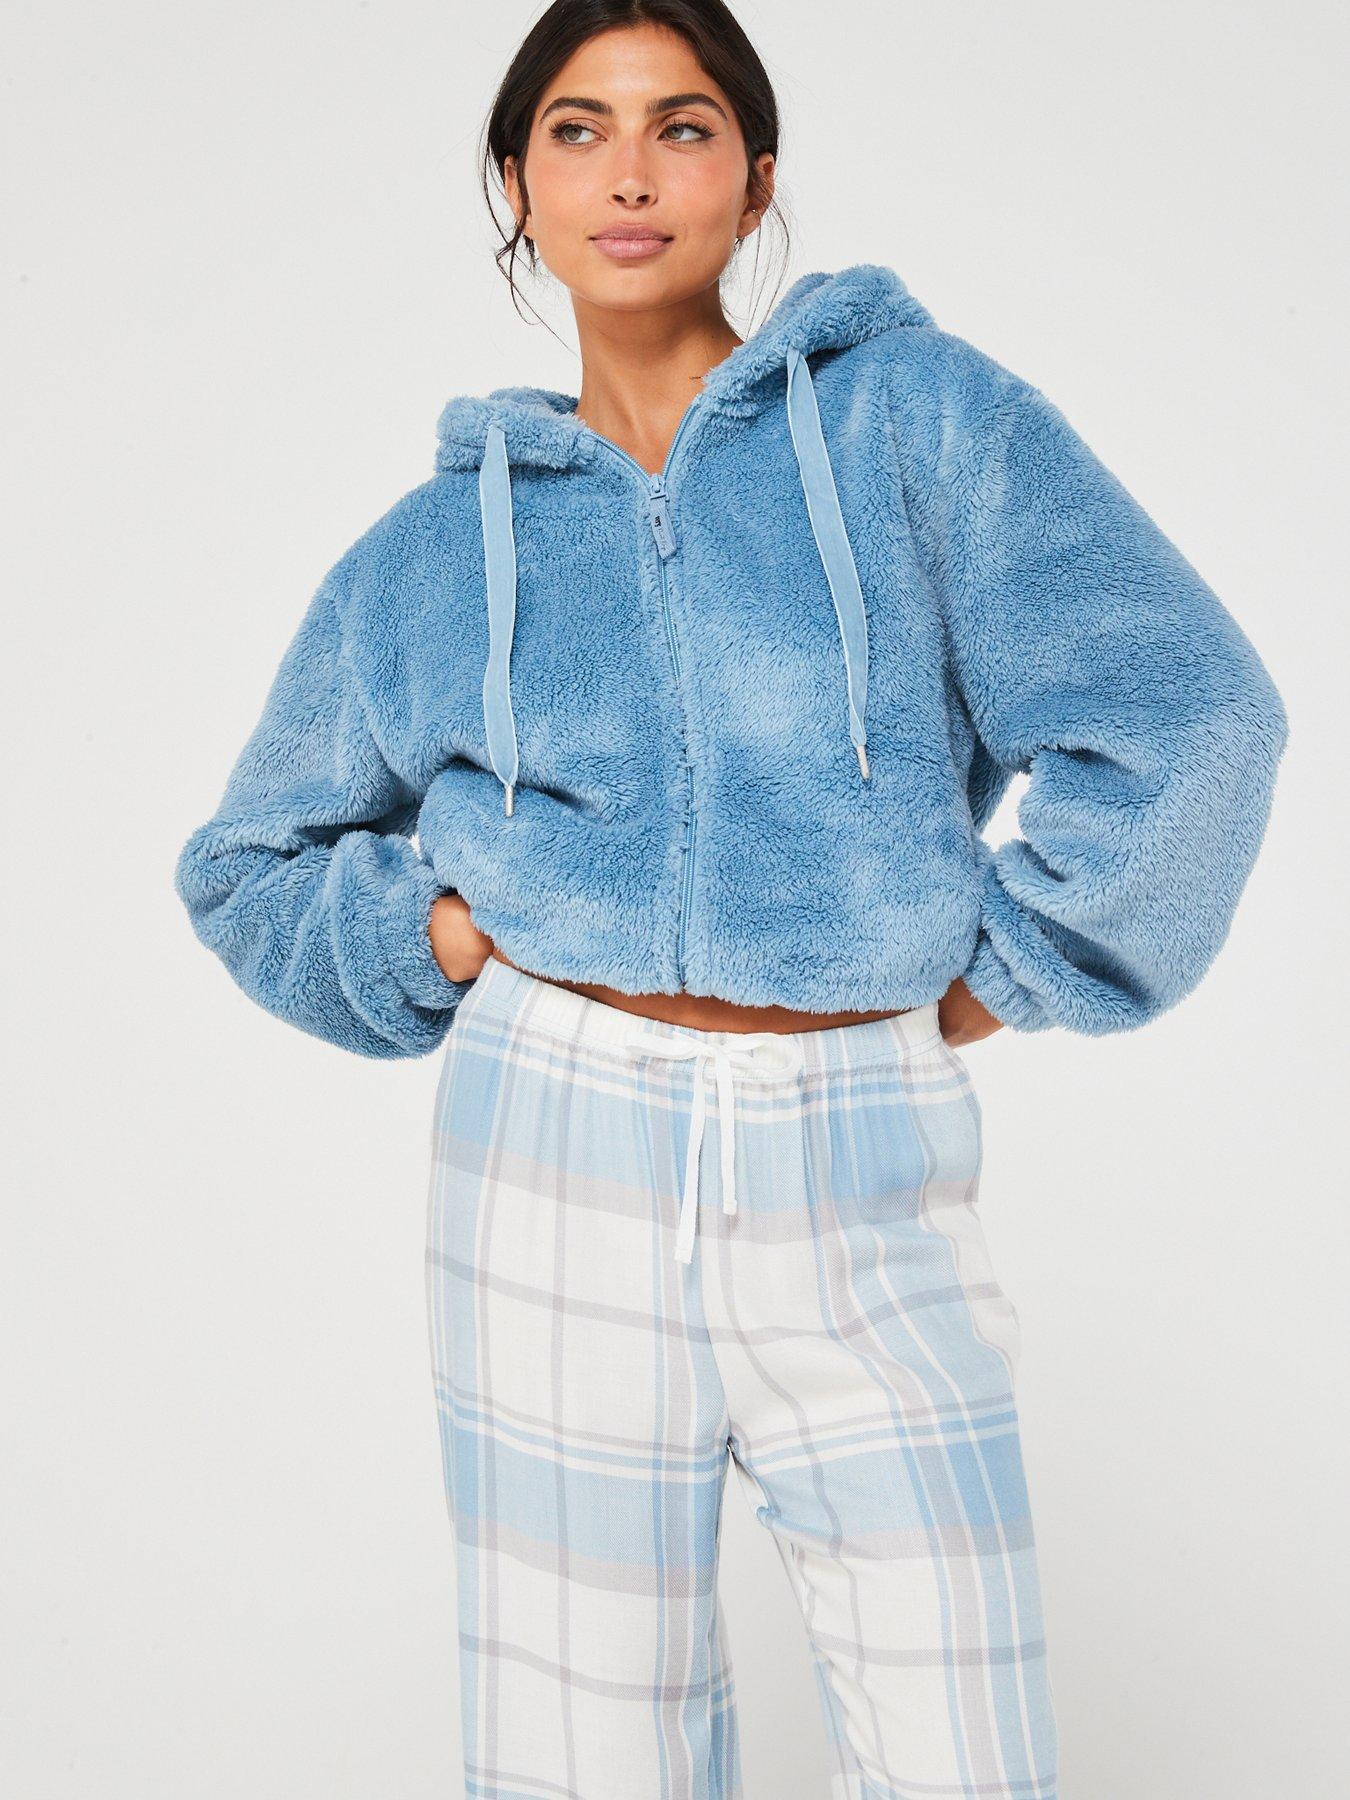 Snuggle Fleece Plaid Pajamas - Aqua 1X